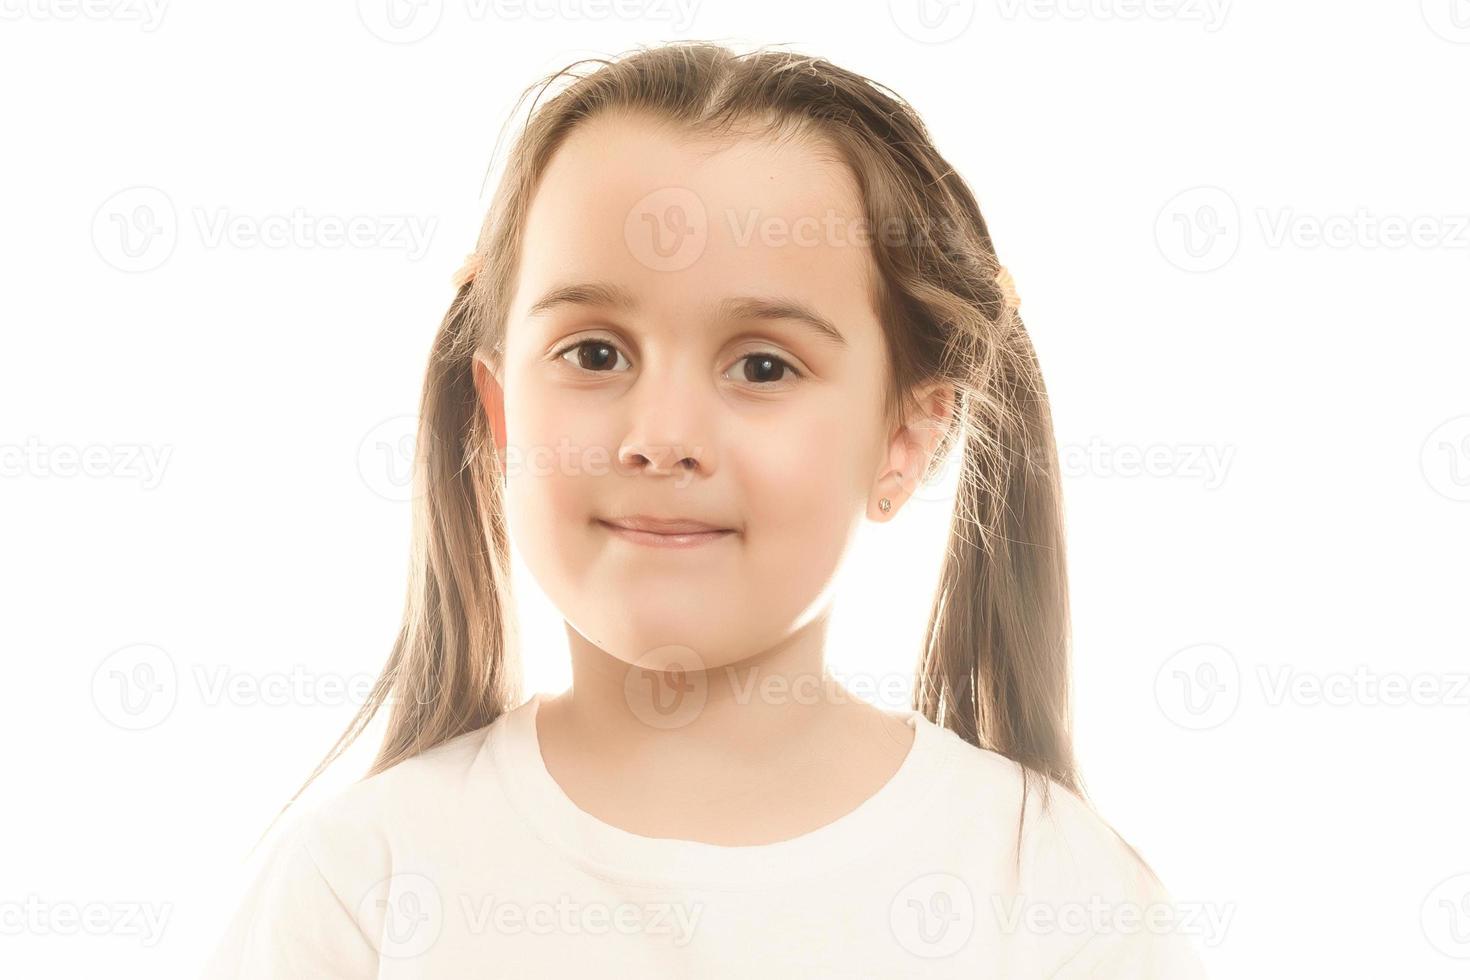 portret van een gelukkig glimlachen kind meisje foto